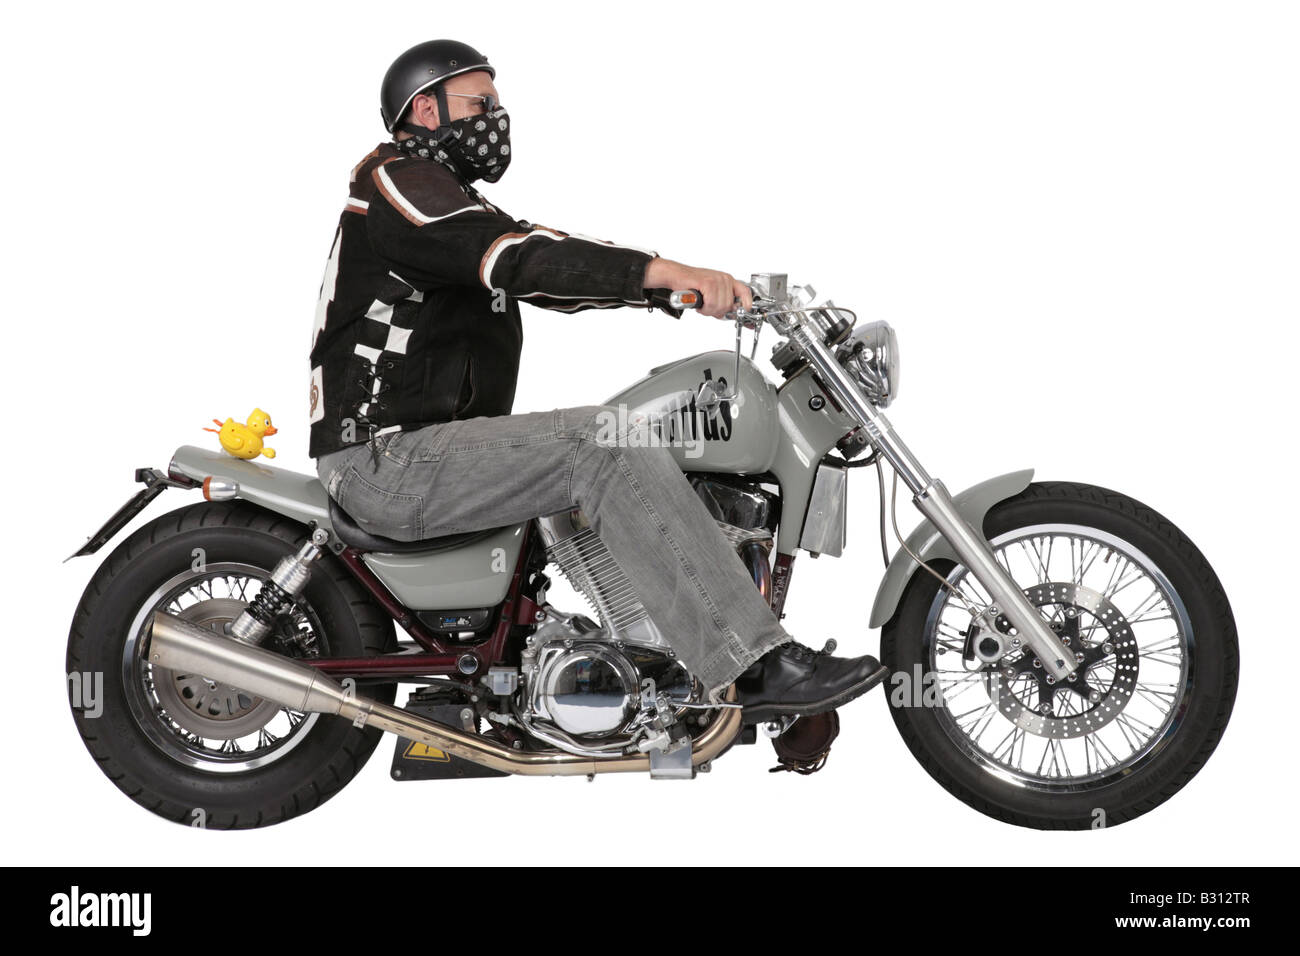 Harley Davidson-pilote avec moto et canard en caoutchouc Photo Stock - Alamy